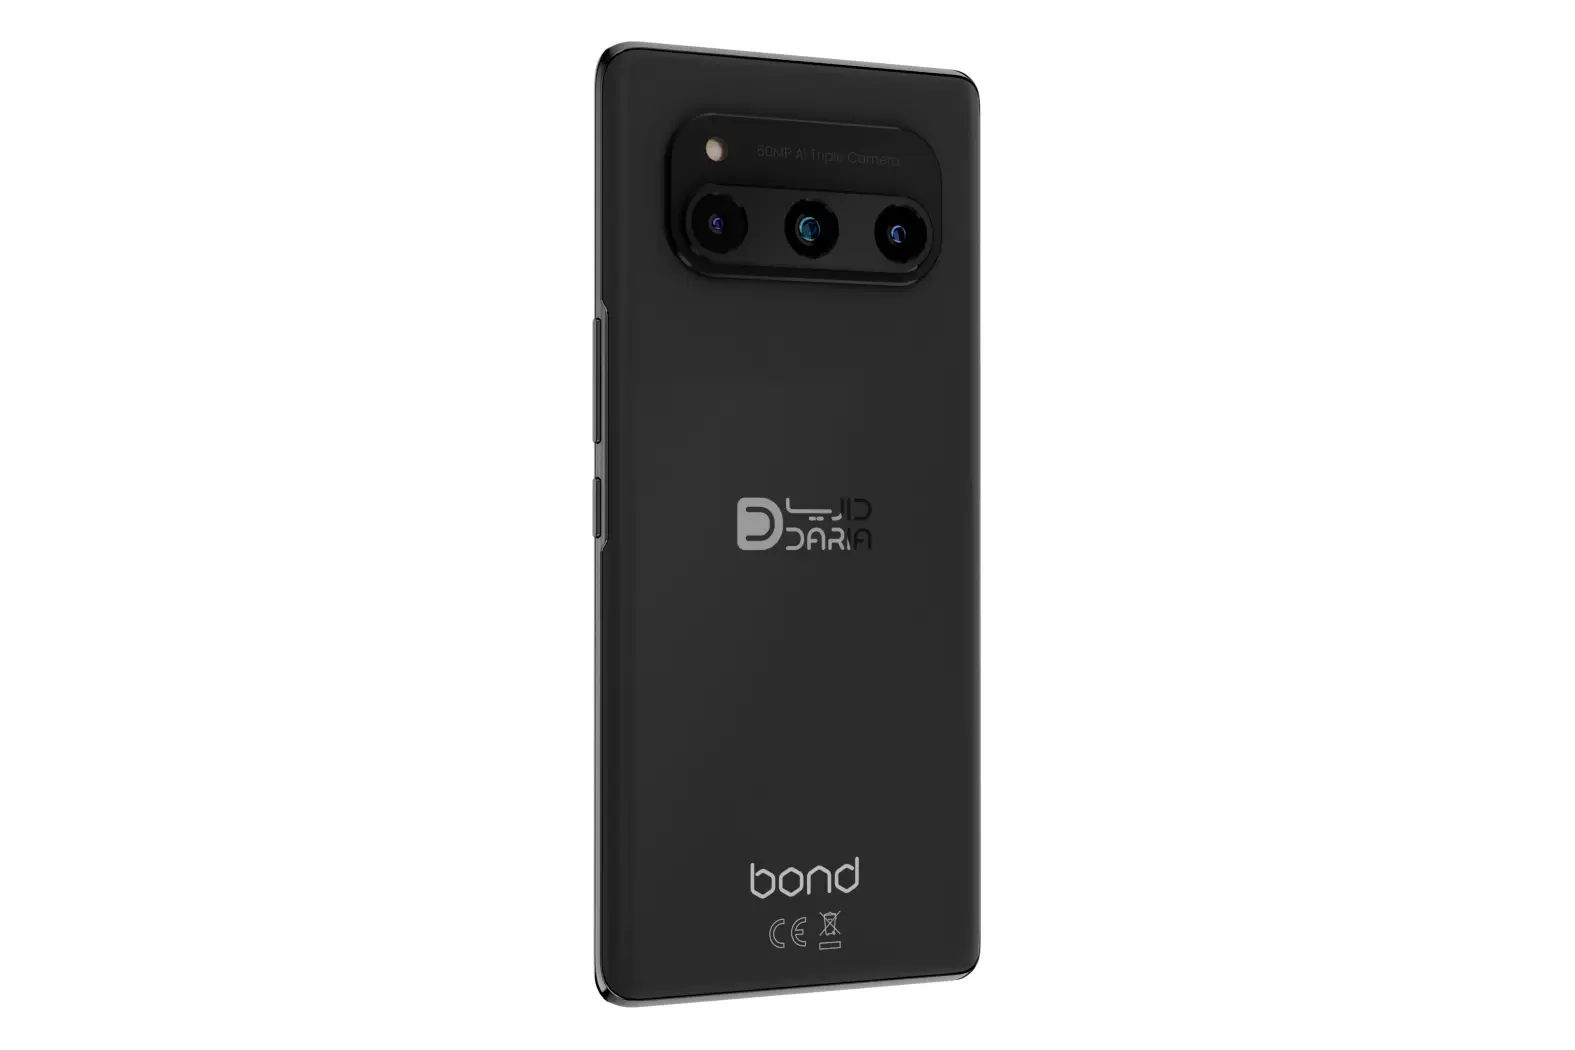 گوشی موبایل داریا مدل Bond 5G با ظرفیت 256GB و رم 8GB